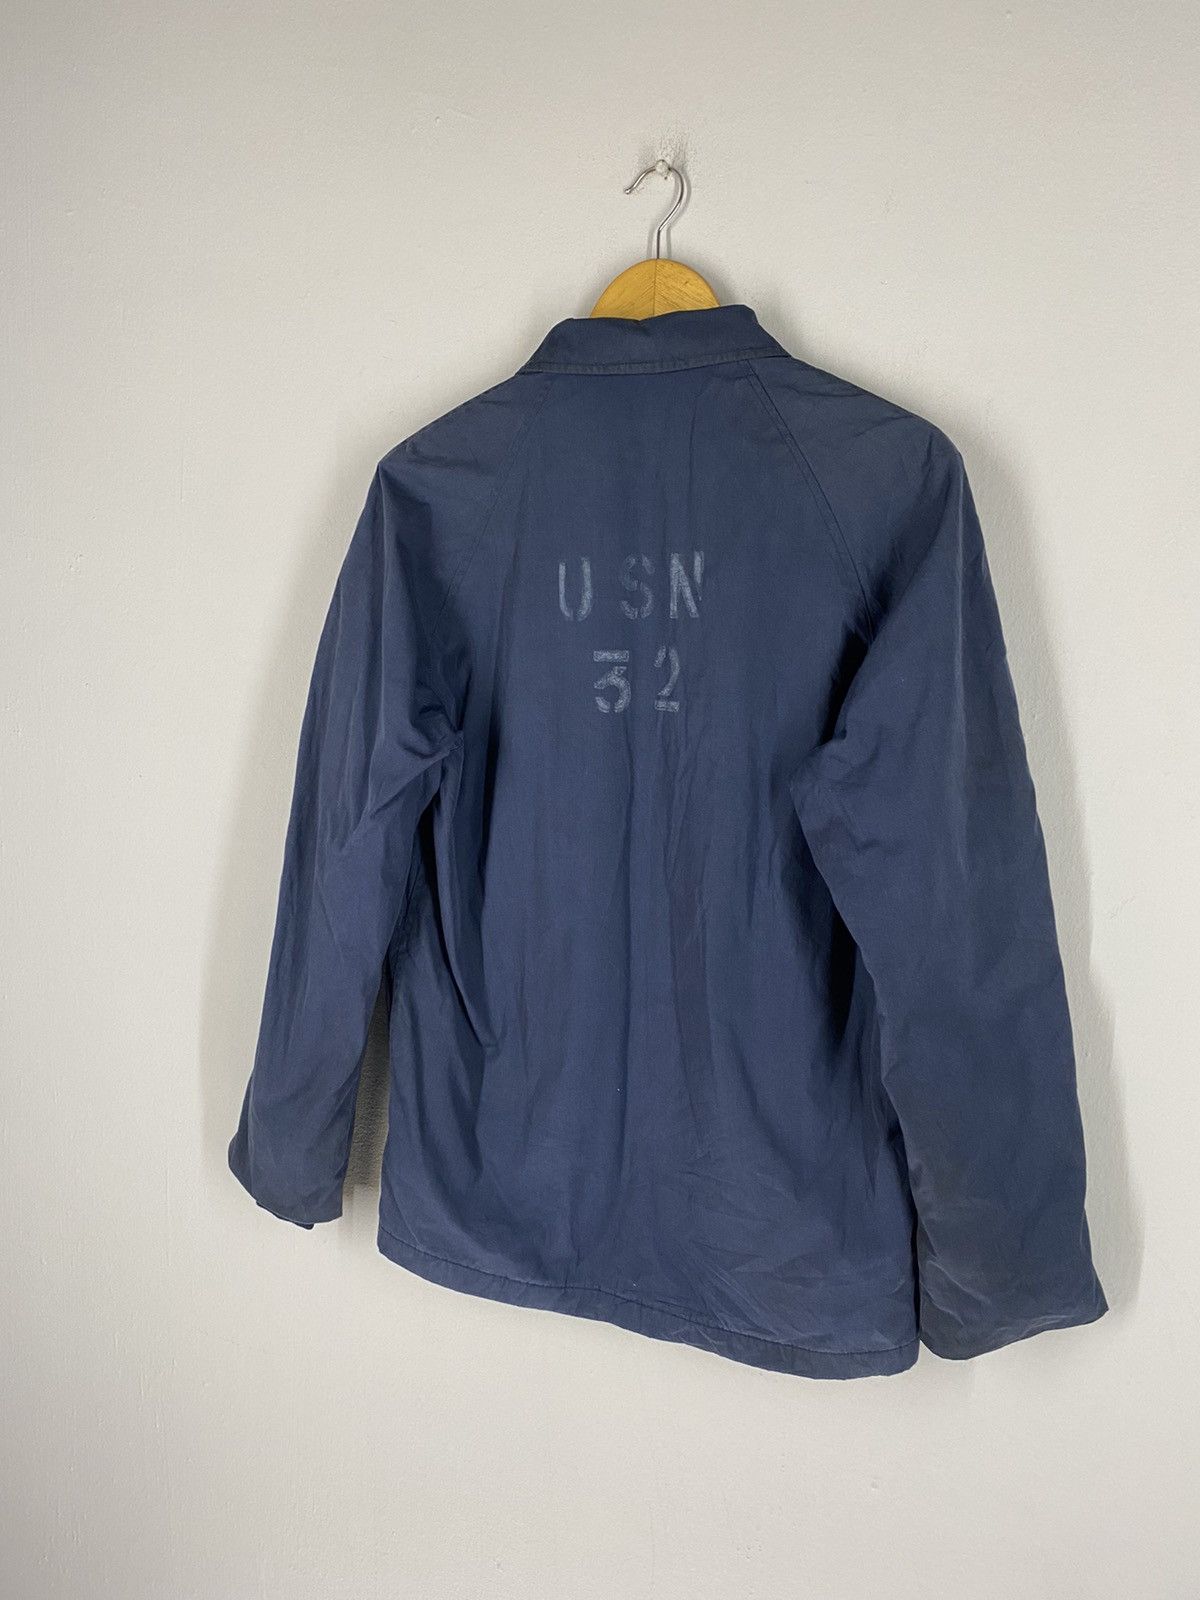 Usn Vintage 80s USN 32 Top Zipper Jacket Size US S / EU 44-46 / 1 - 2 Preview